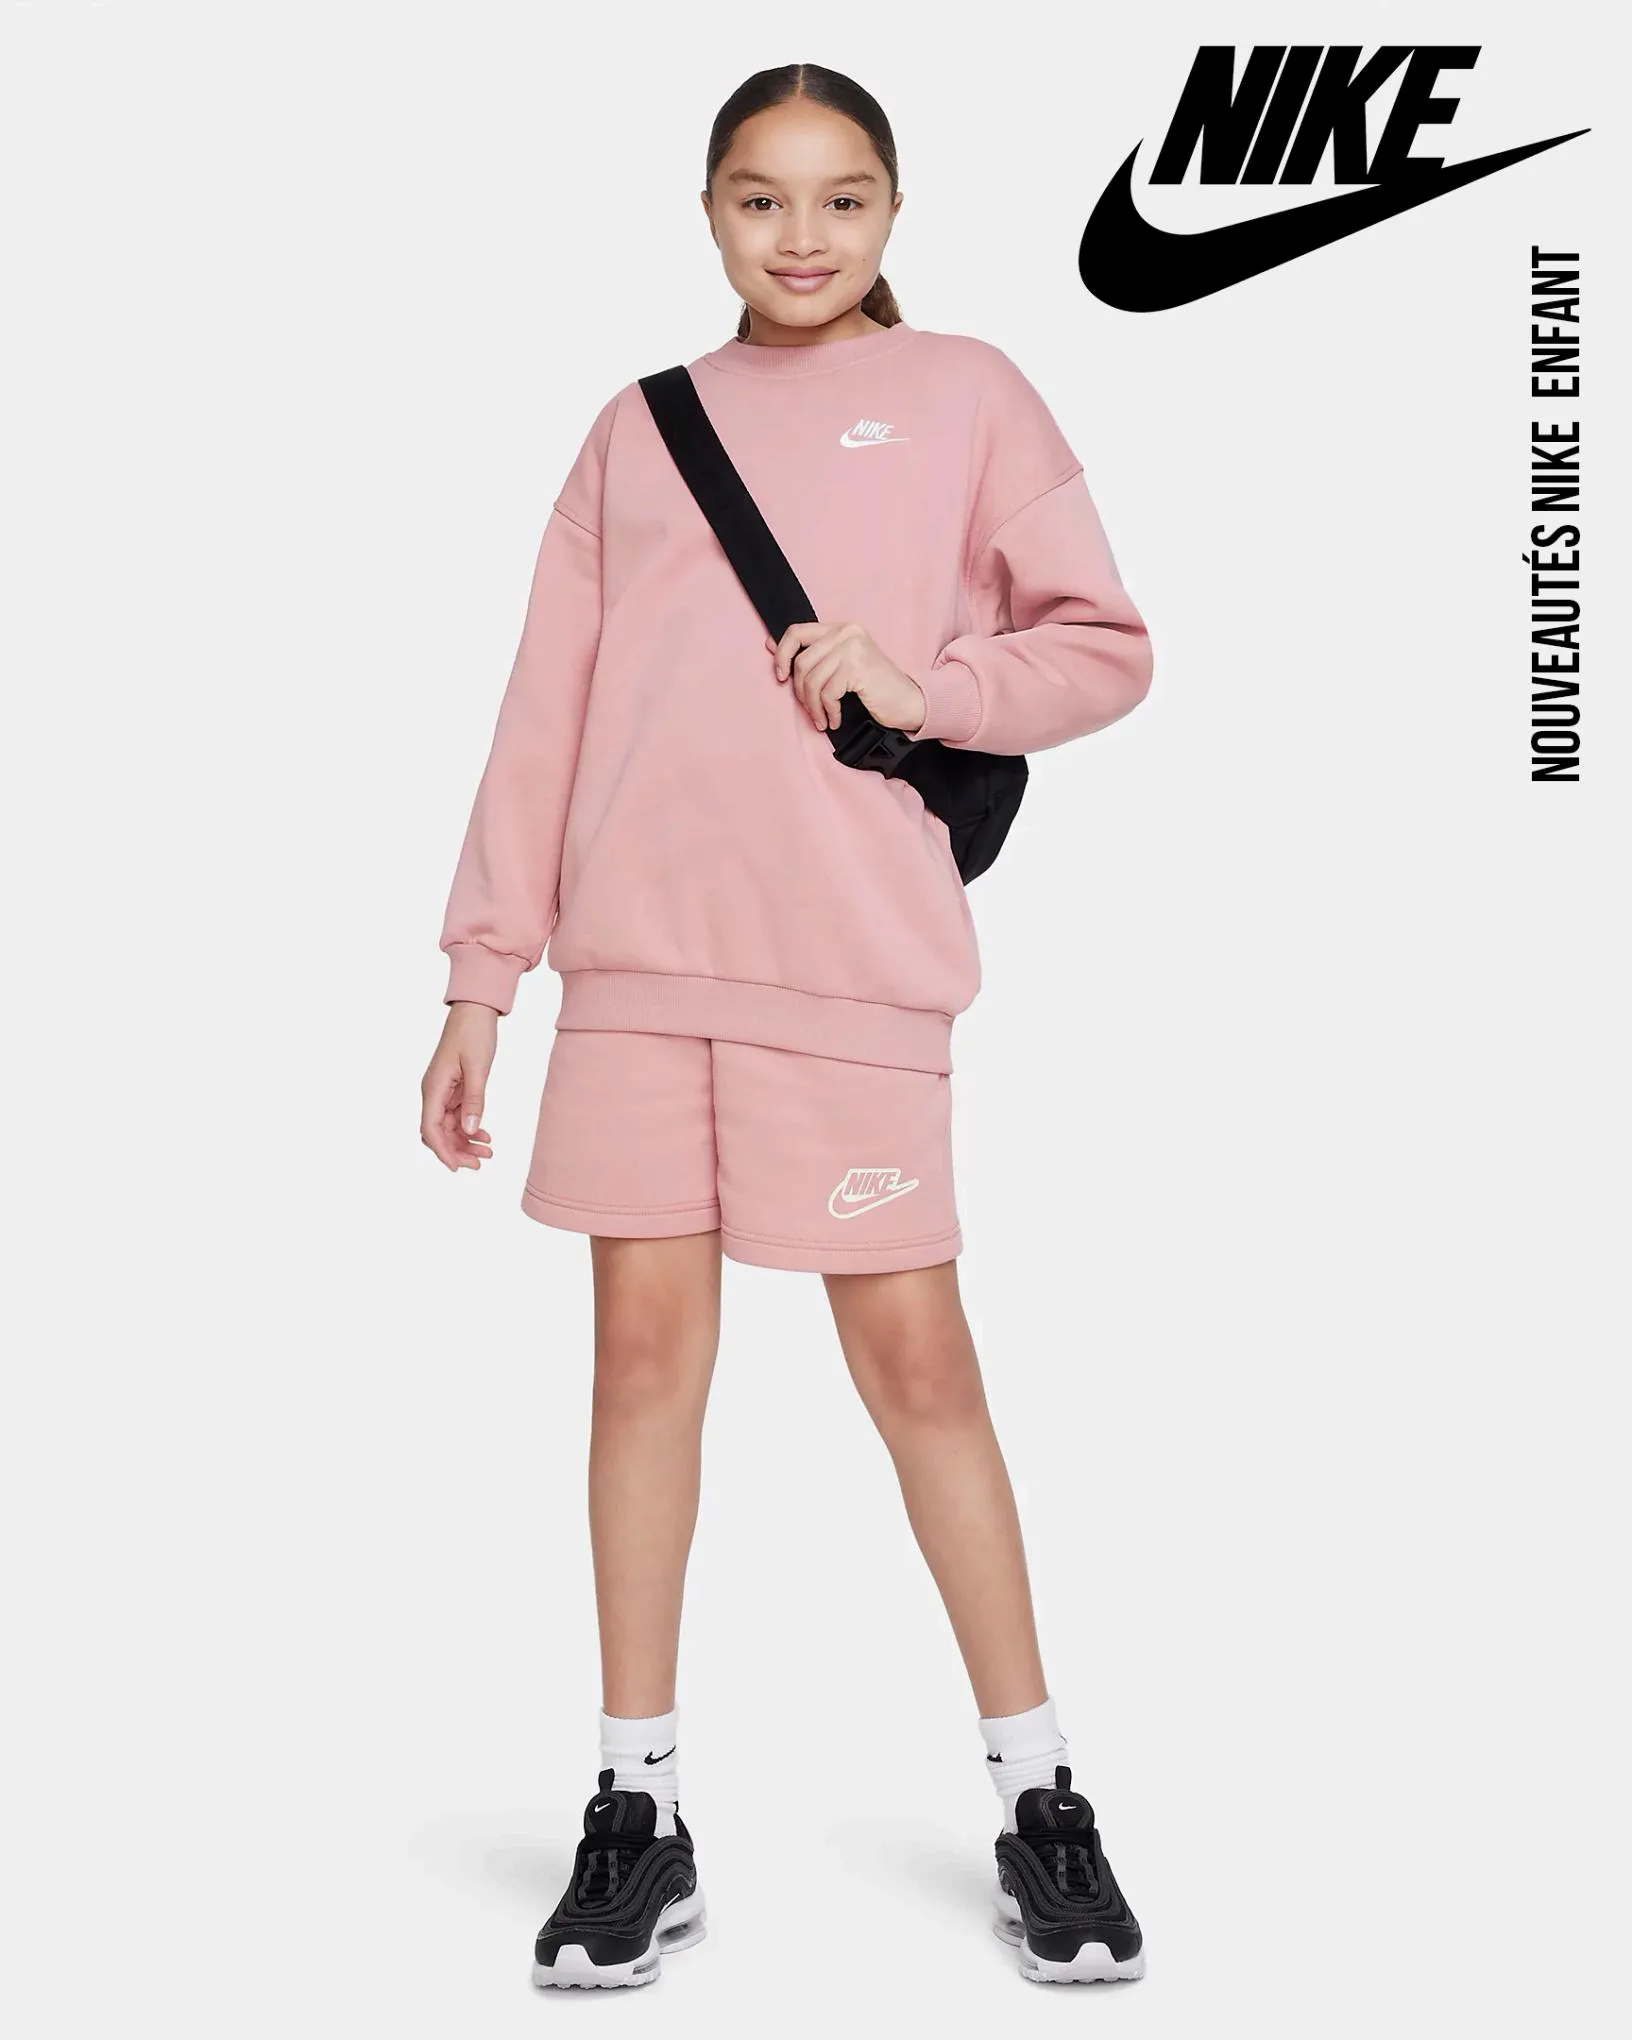 Catalogue Nouveautés Enfant Nike, page 00001